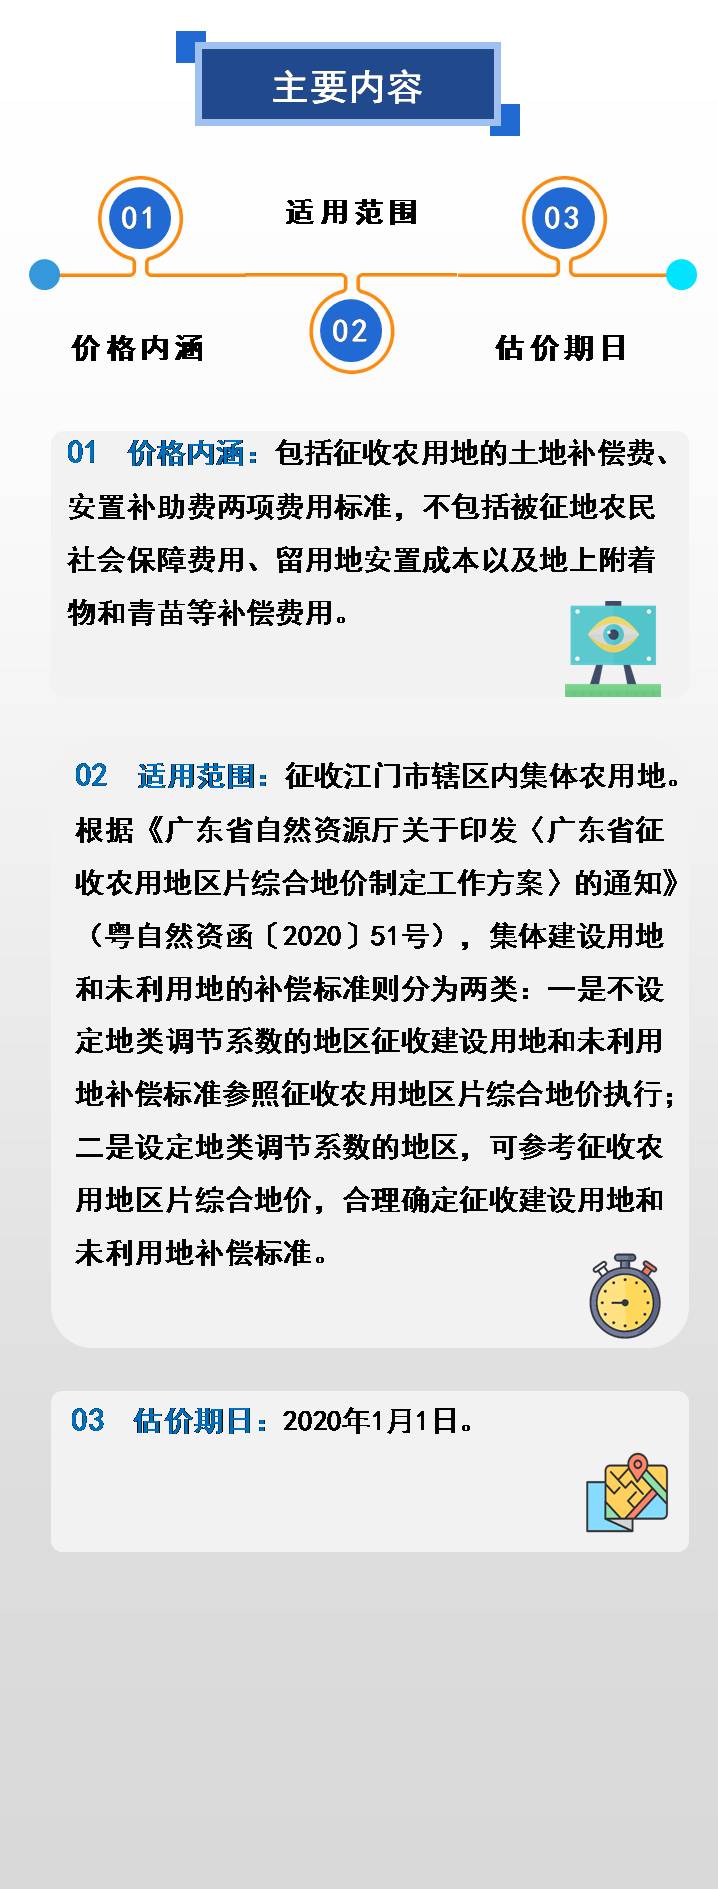 210223江门市征收农用地区片综合地价项目图解 (5).JPG